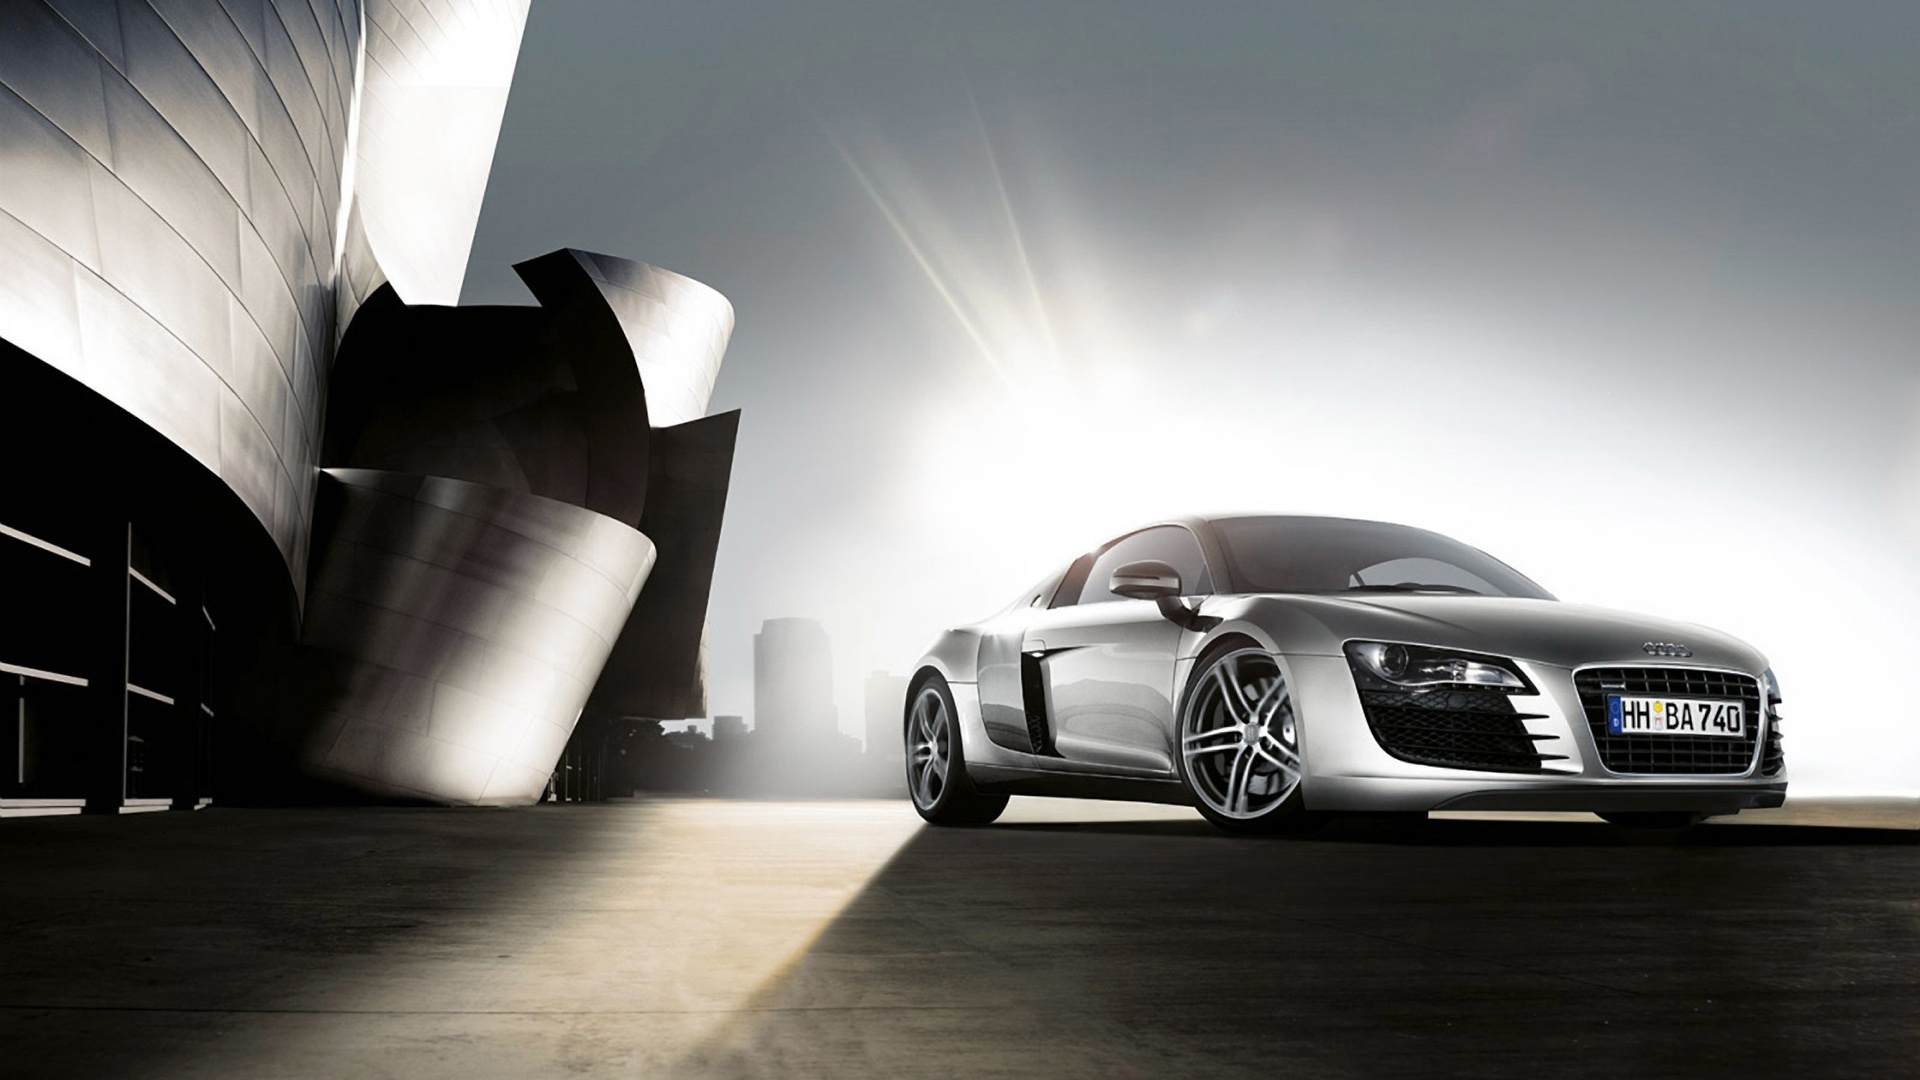 Audi Cars Hd Wallpapers 1080p Download